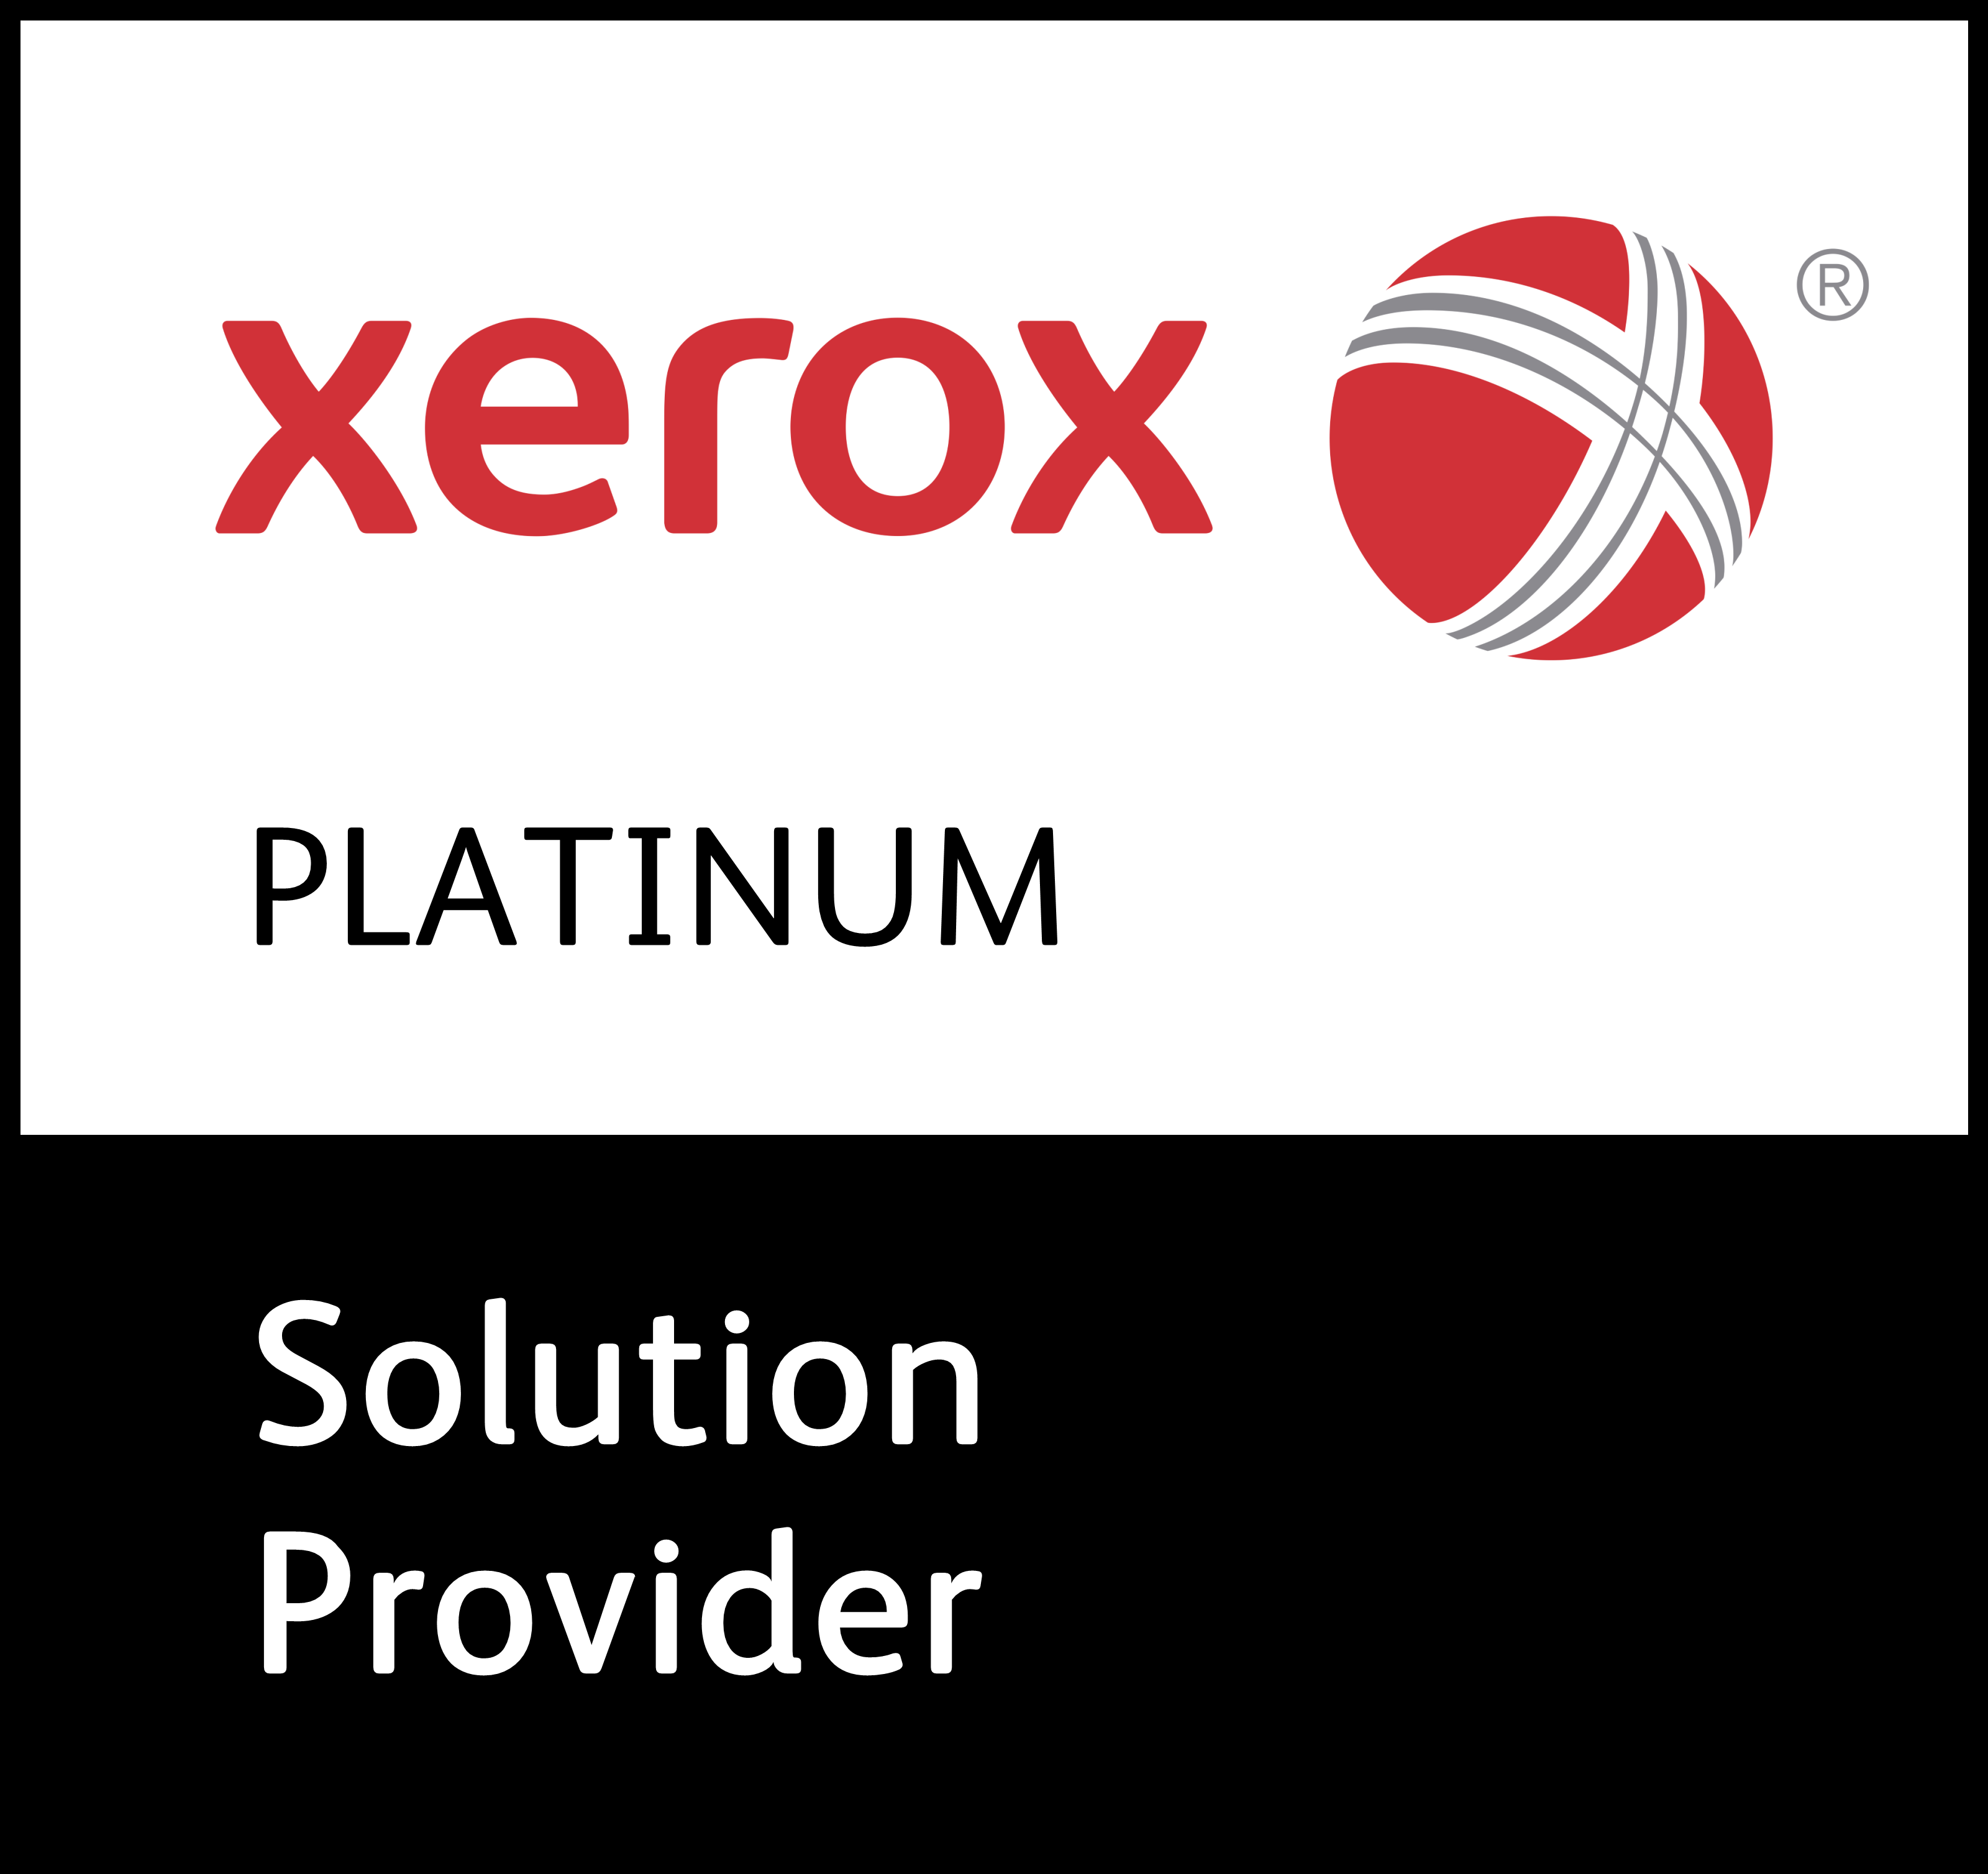 XEROX Partner Badge 2019